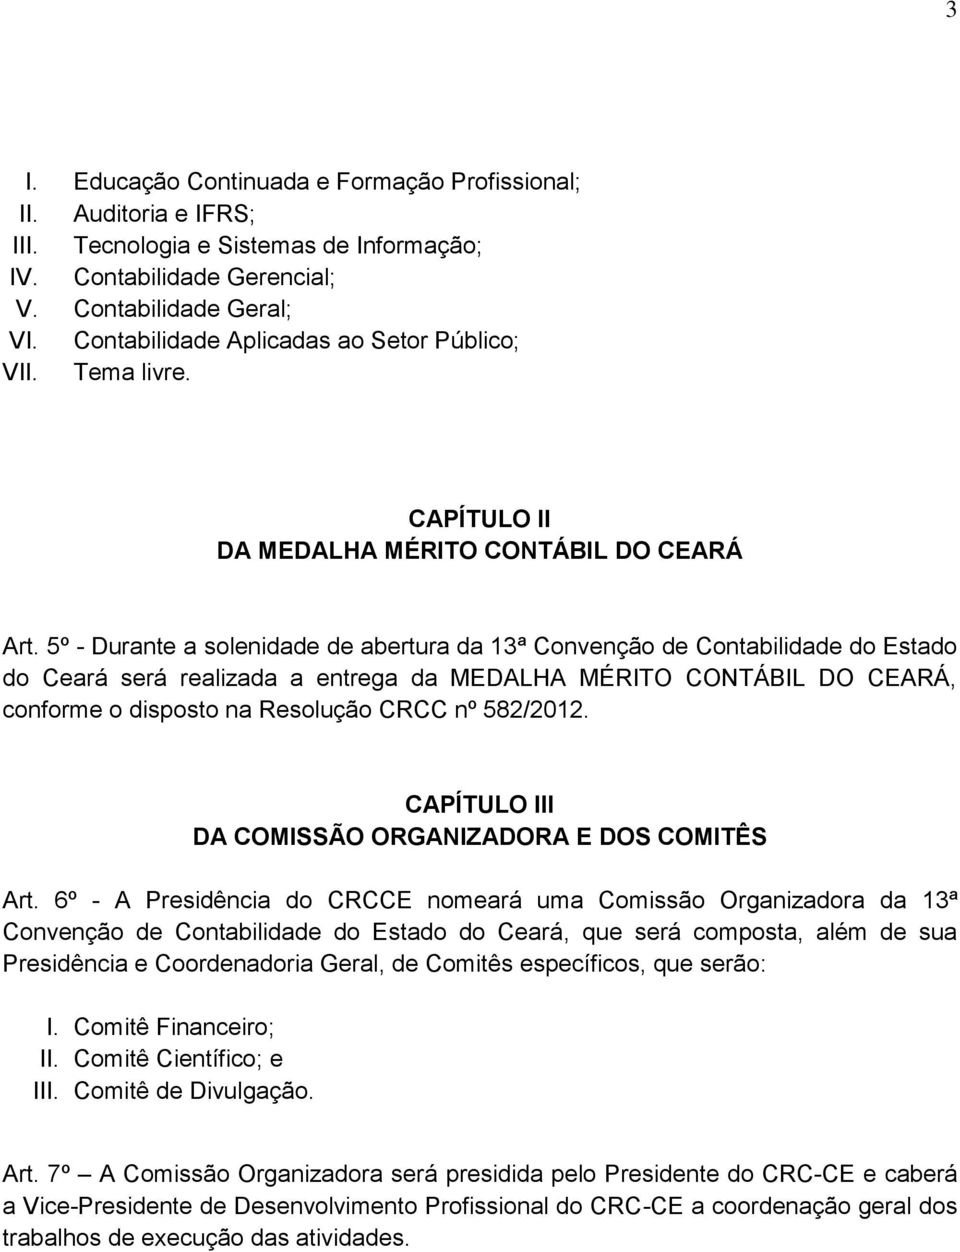 5º - Durante a solenidade de abertura da 13ª Convenção de Contabilidade do Estado do Ceará será realizada a entrega da MEDALHA MÉRITO CONTÁBIL DO CEARÁ, conforme o disposto na Resolução CRCC nº